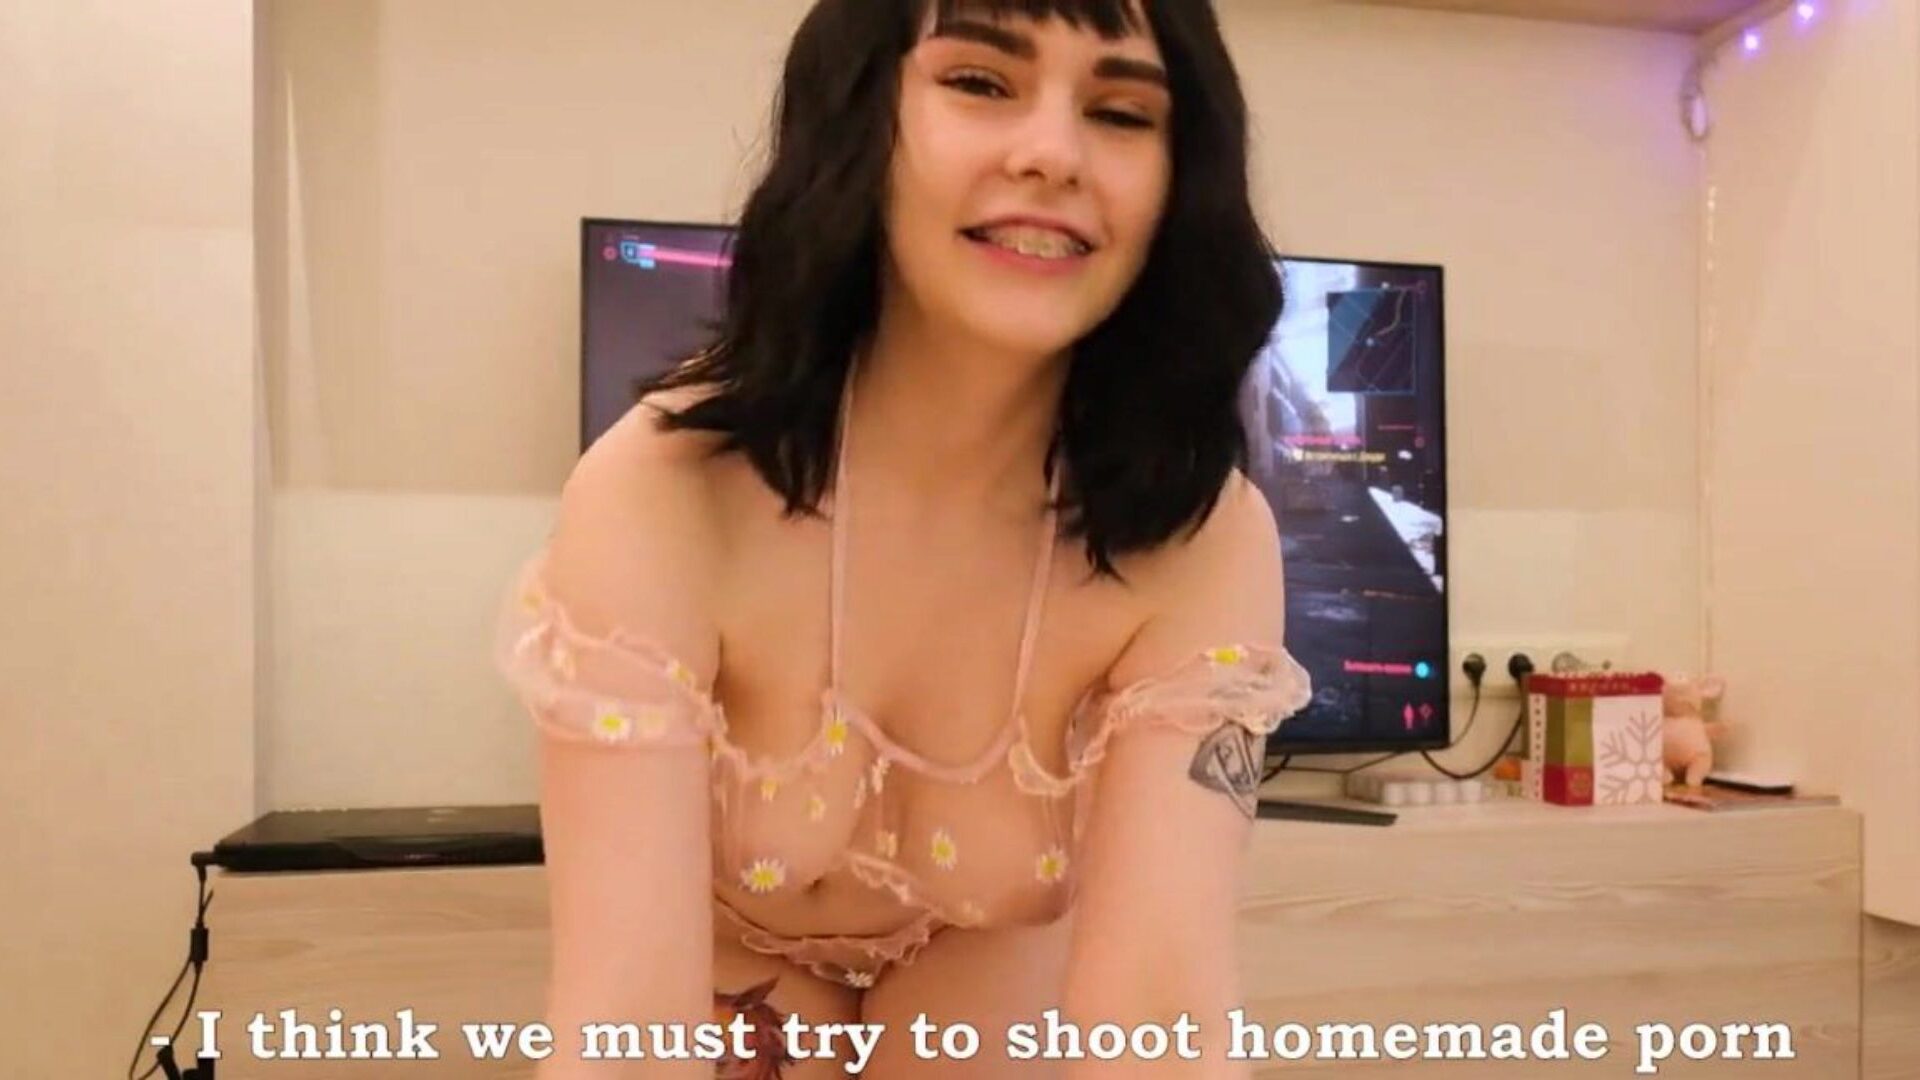 minha namorada peituda quer filmar nosso sexo: HD pornô c9 grátis assista minha namorada peituda quer filmar nosso clipe de sexo no xhamster - o banco de dados definitivo de episódios de hd gonzo porno pornô online grátis de sexo russo